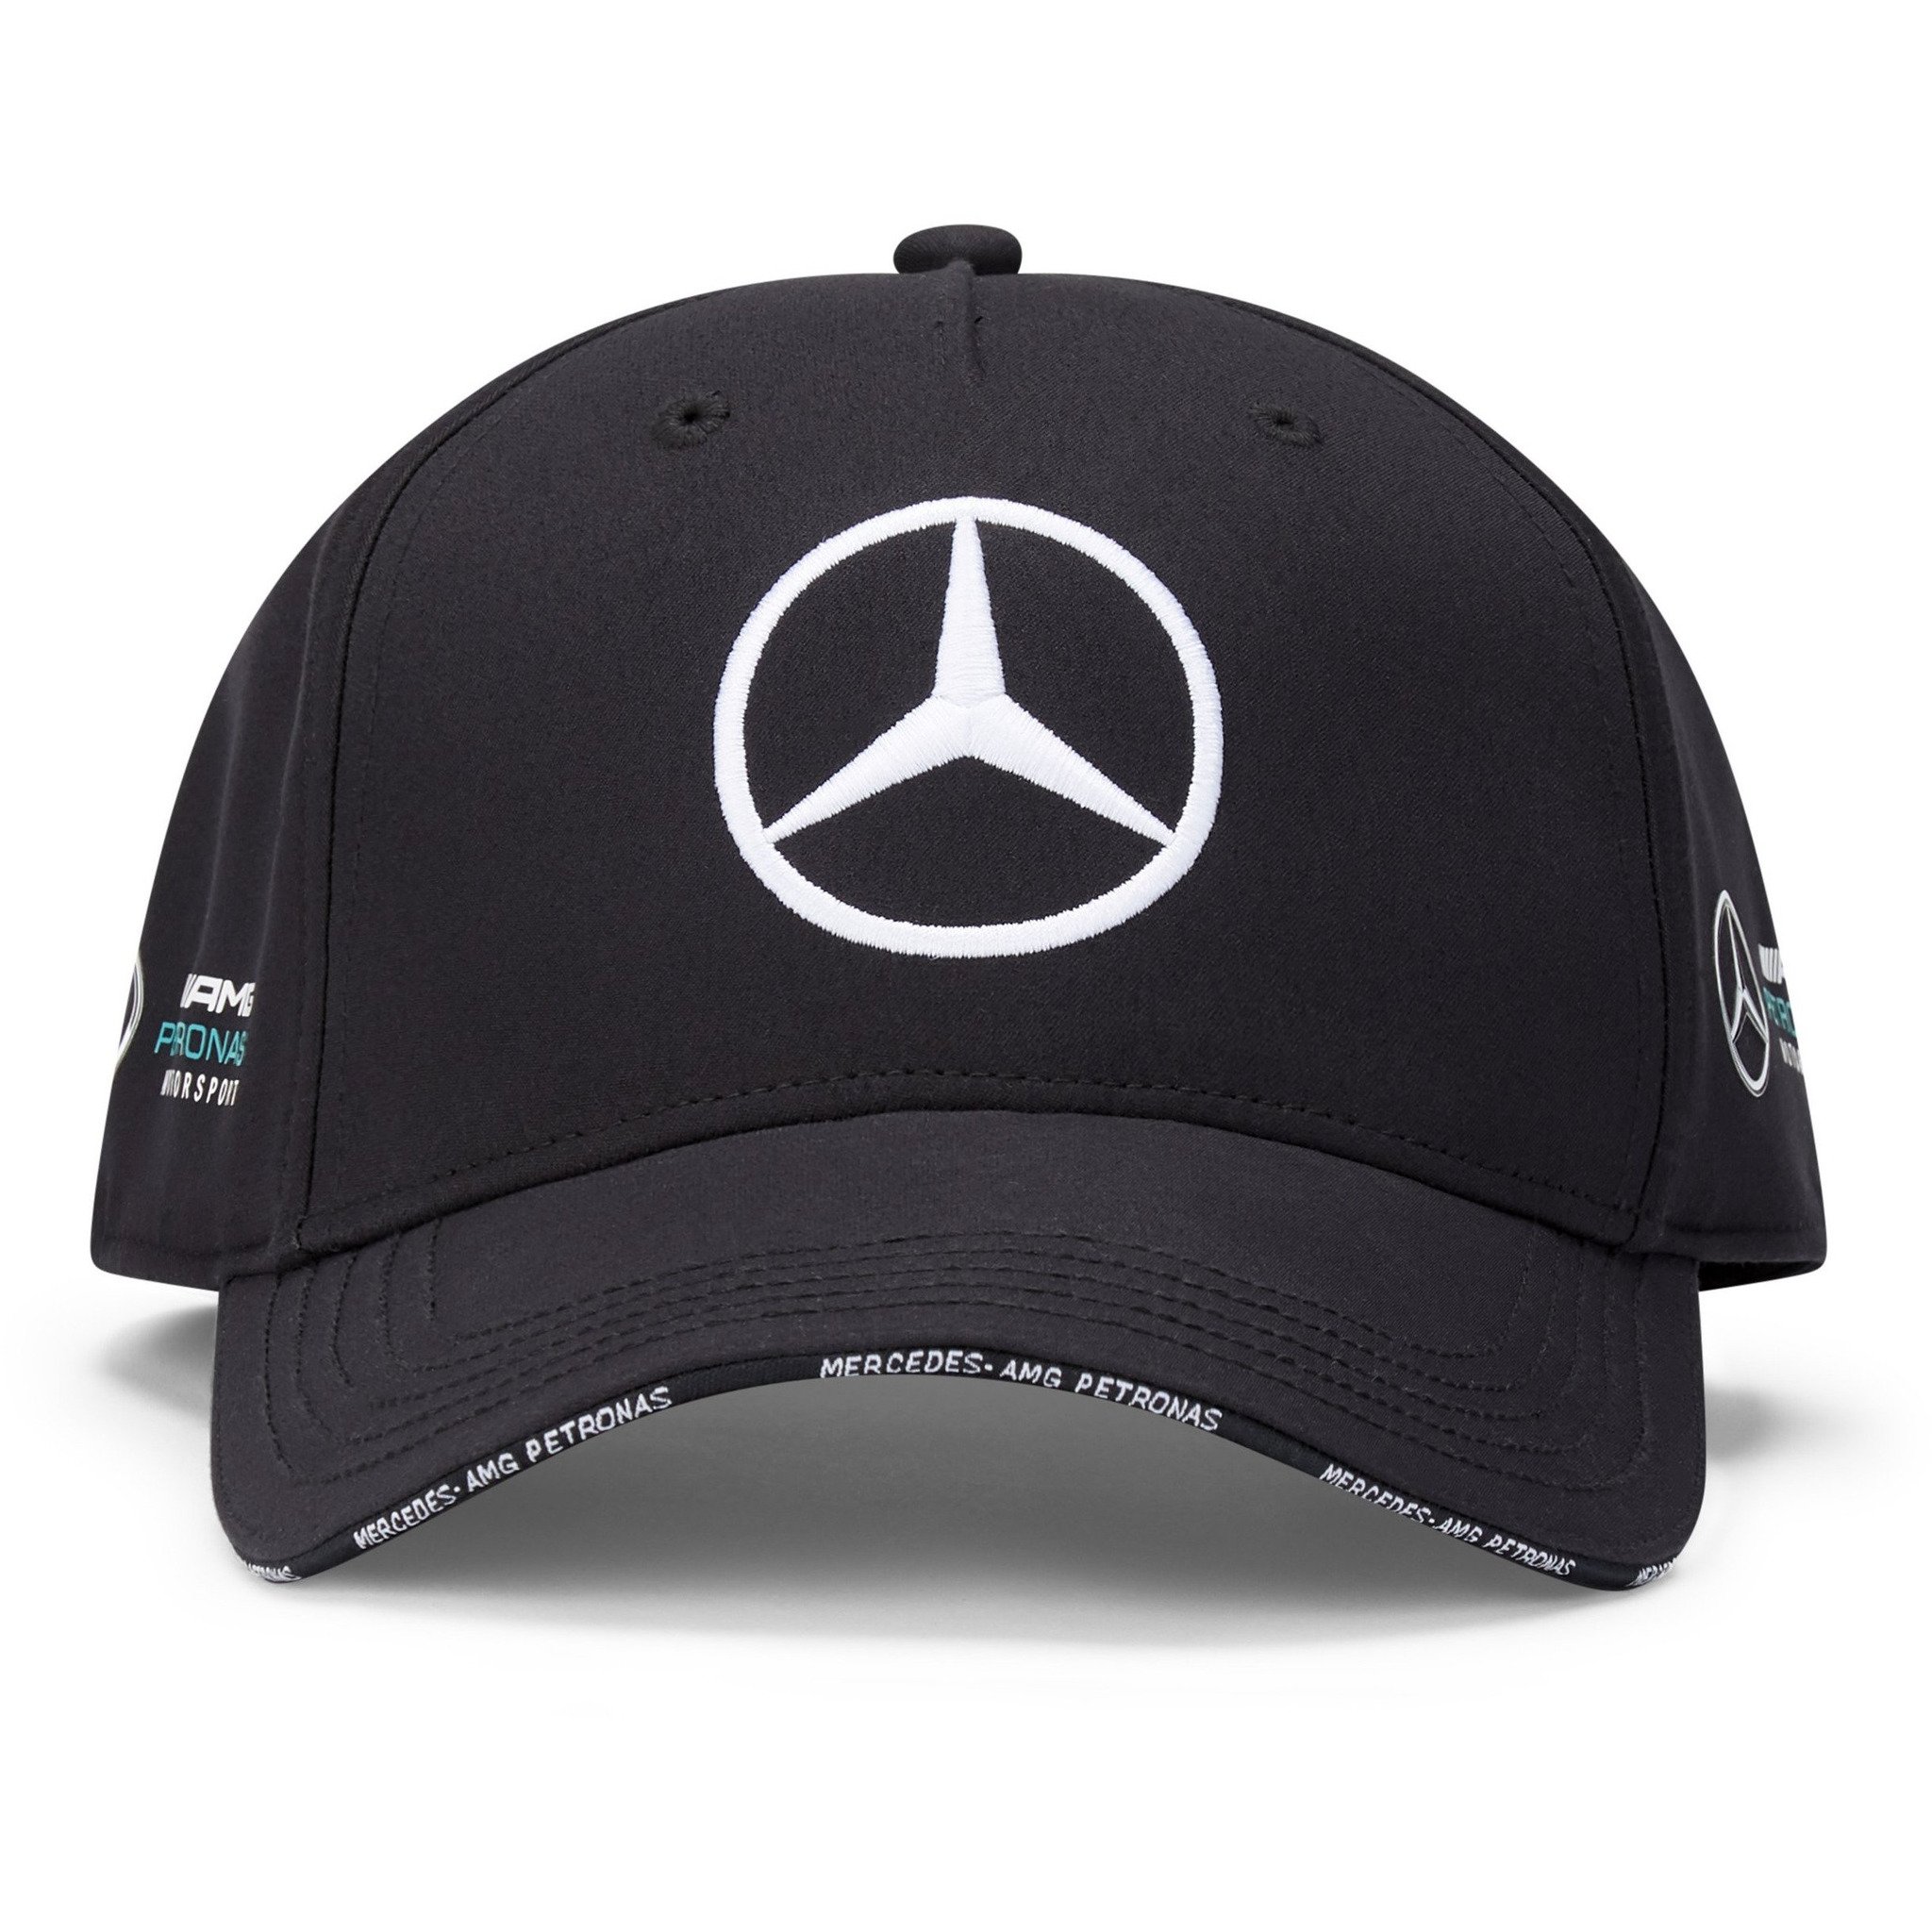 MercedesAMG Team cap 2021